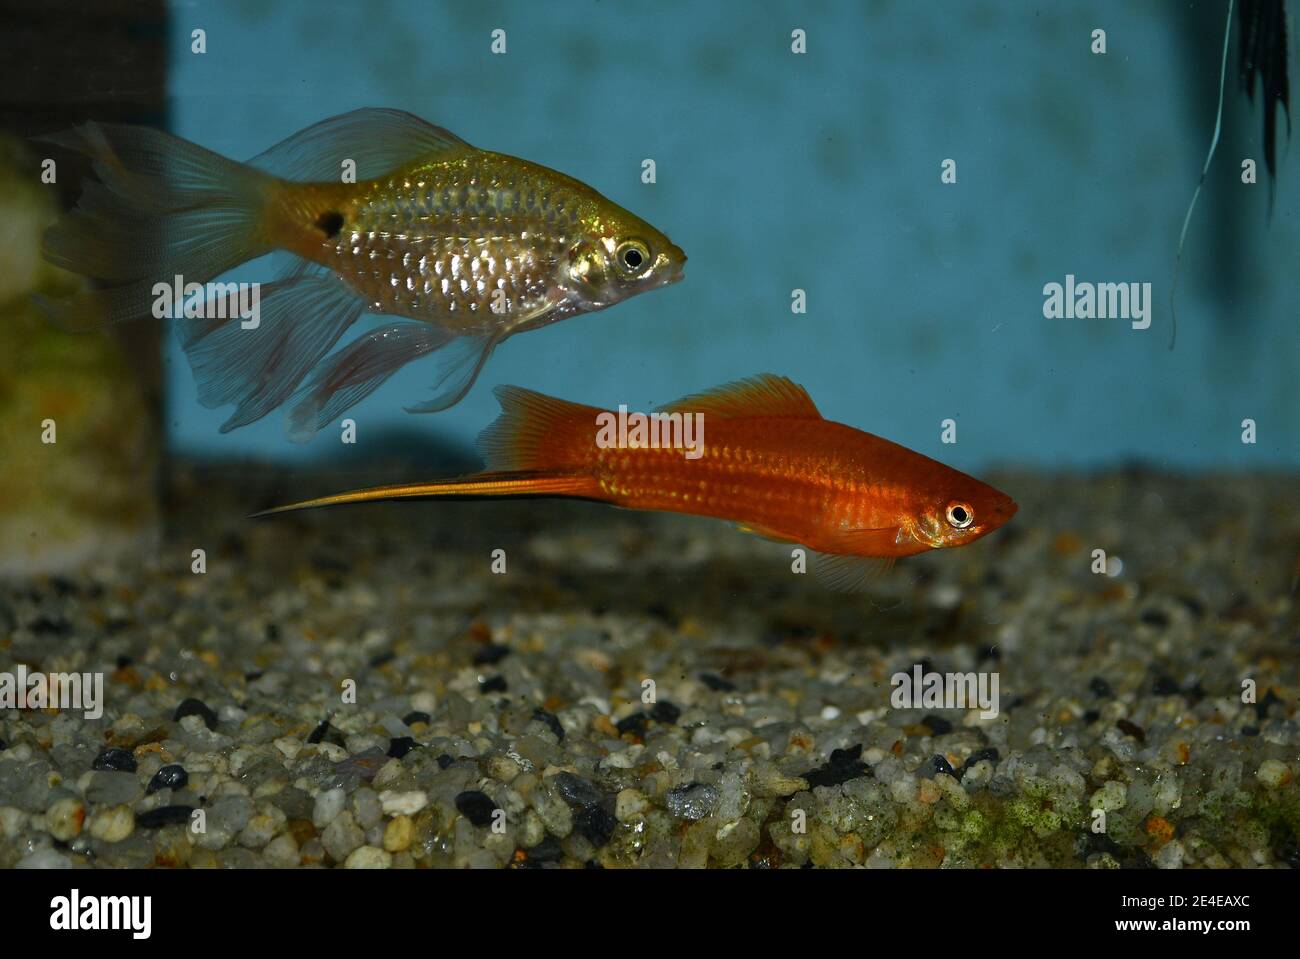 Xiphophorus hellerii (swordtail) and rosy barb (Puntius conchonius) swimming in tropical aquarium Stock Photo